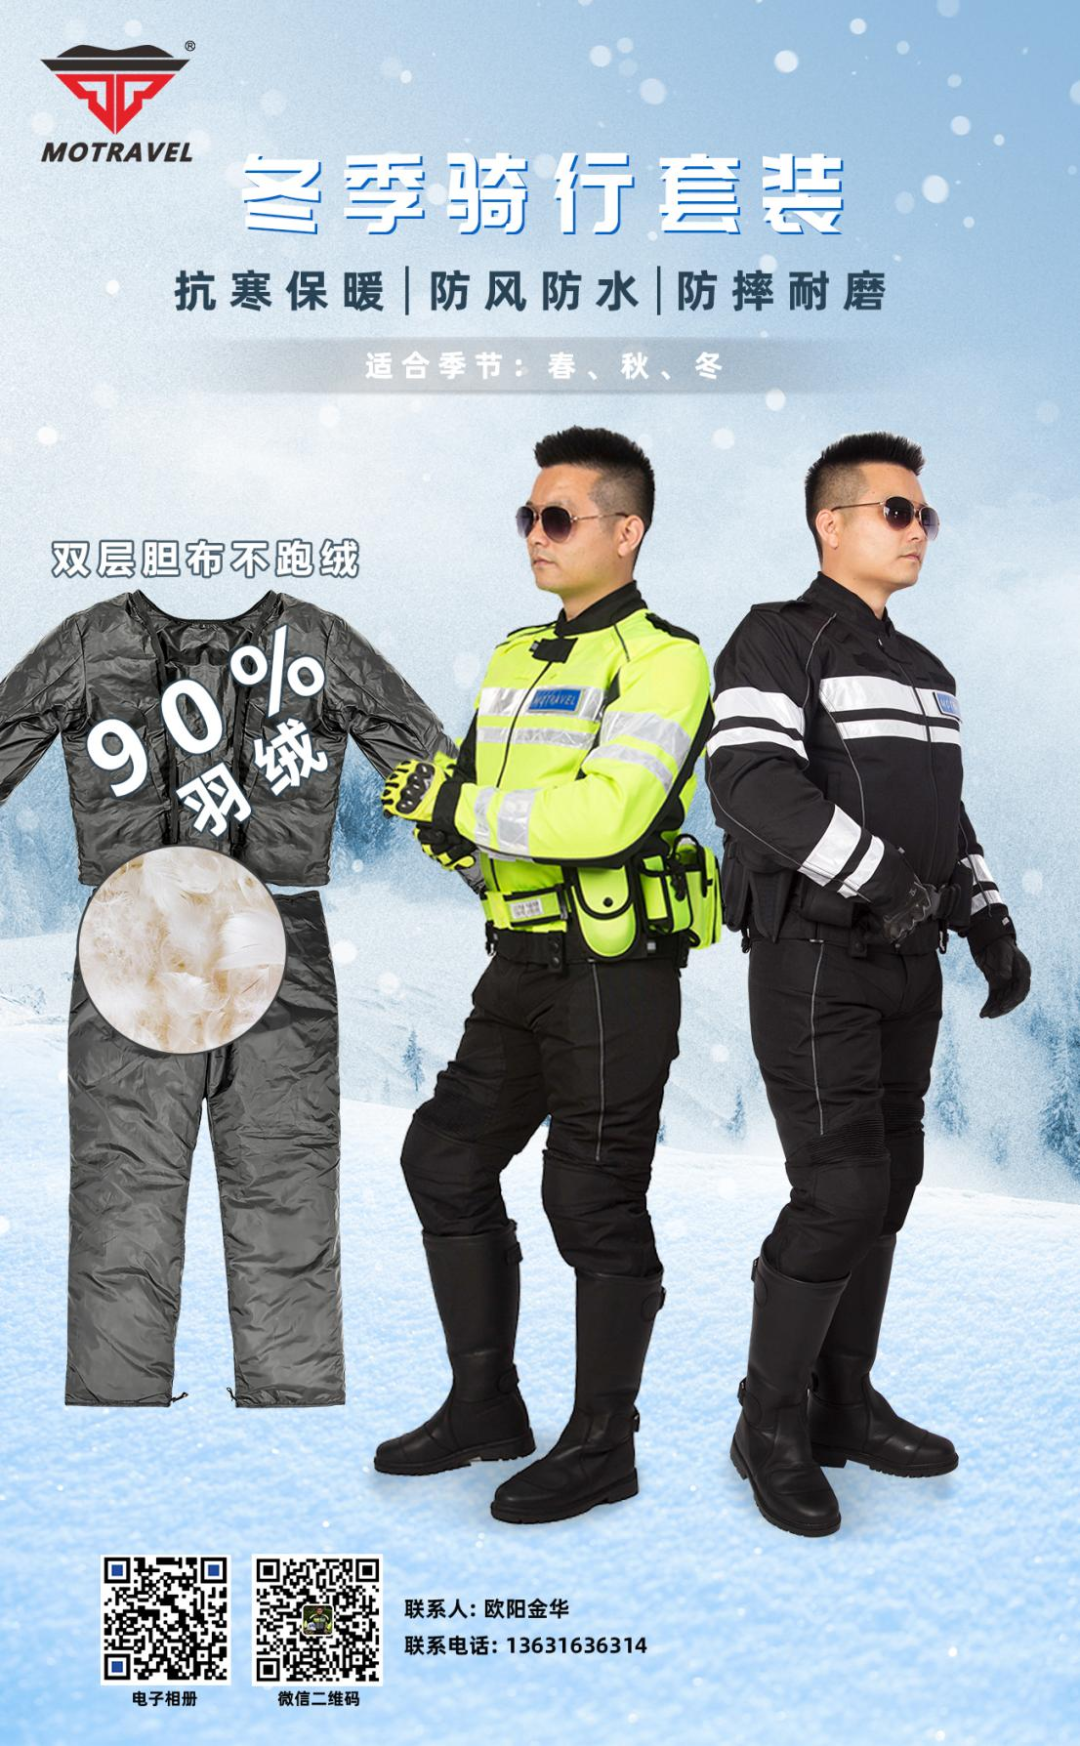 冬季骑警换装保暖装备！5款惠警暖警装备推荐